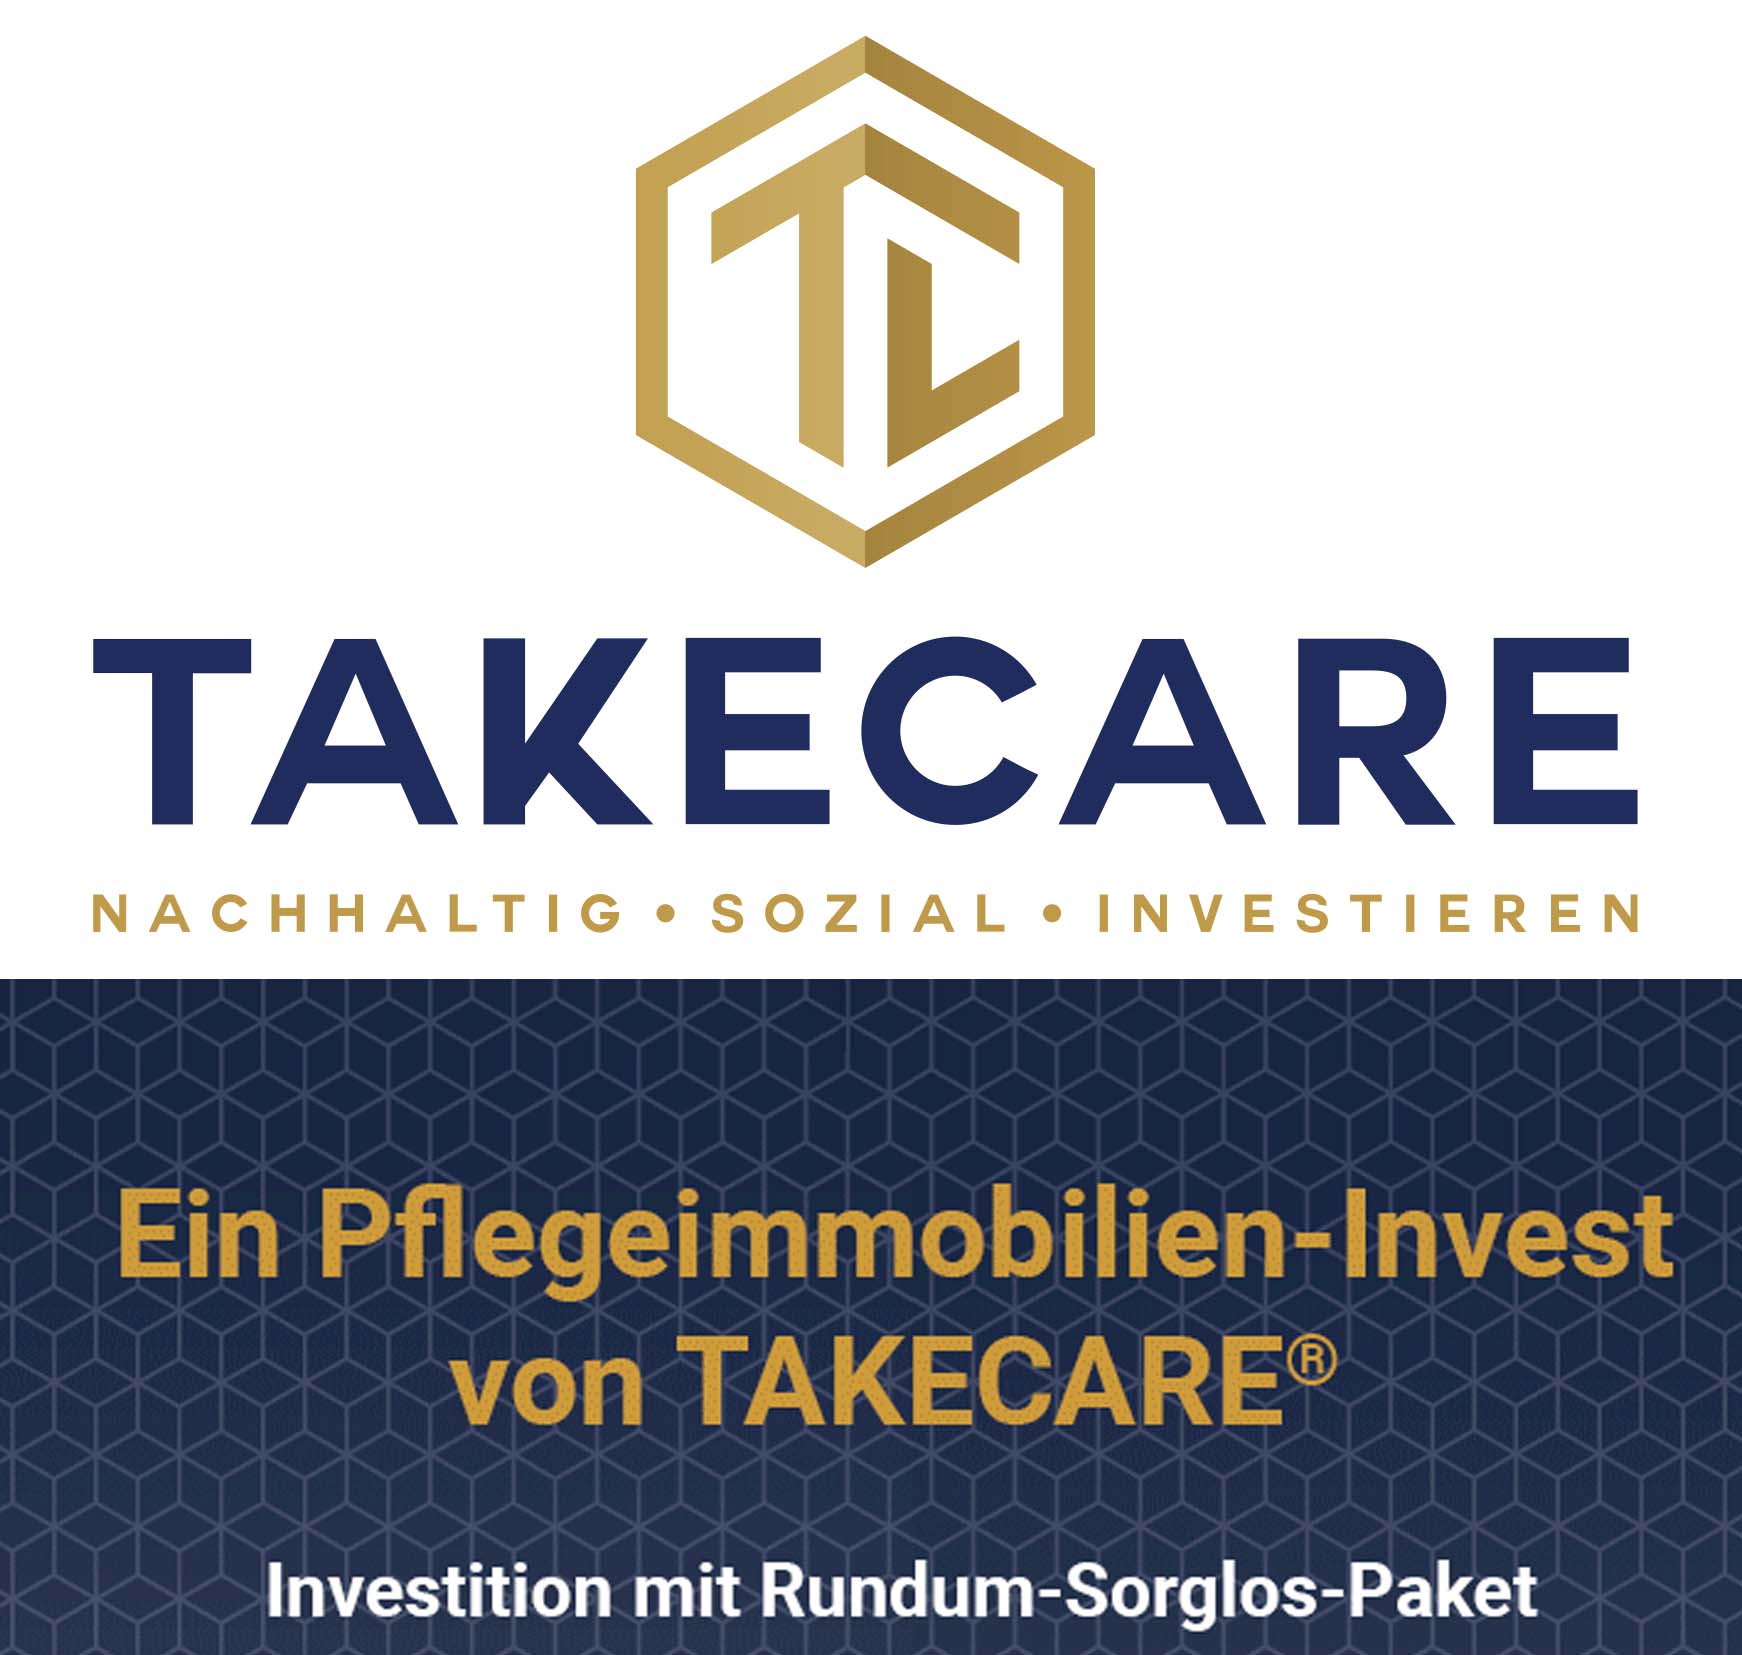 www.takecare.de.